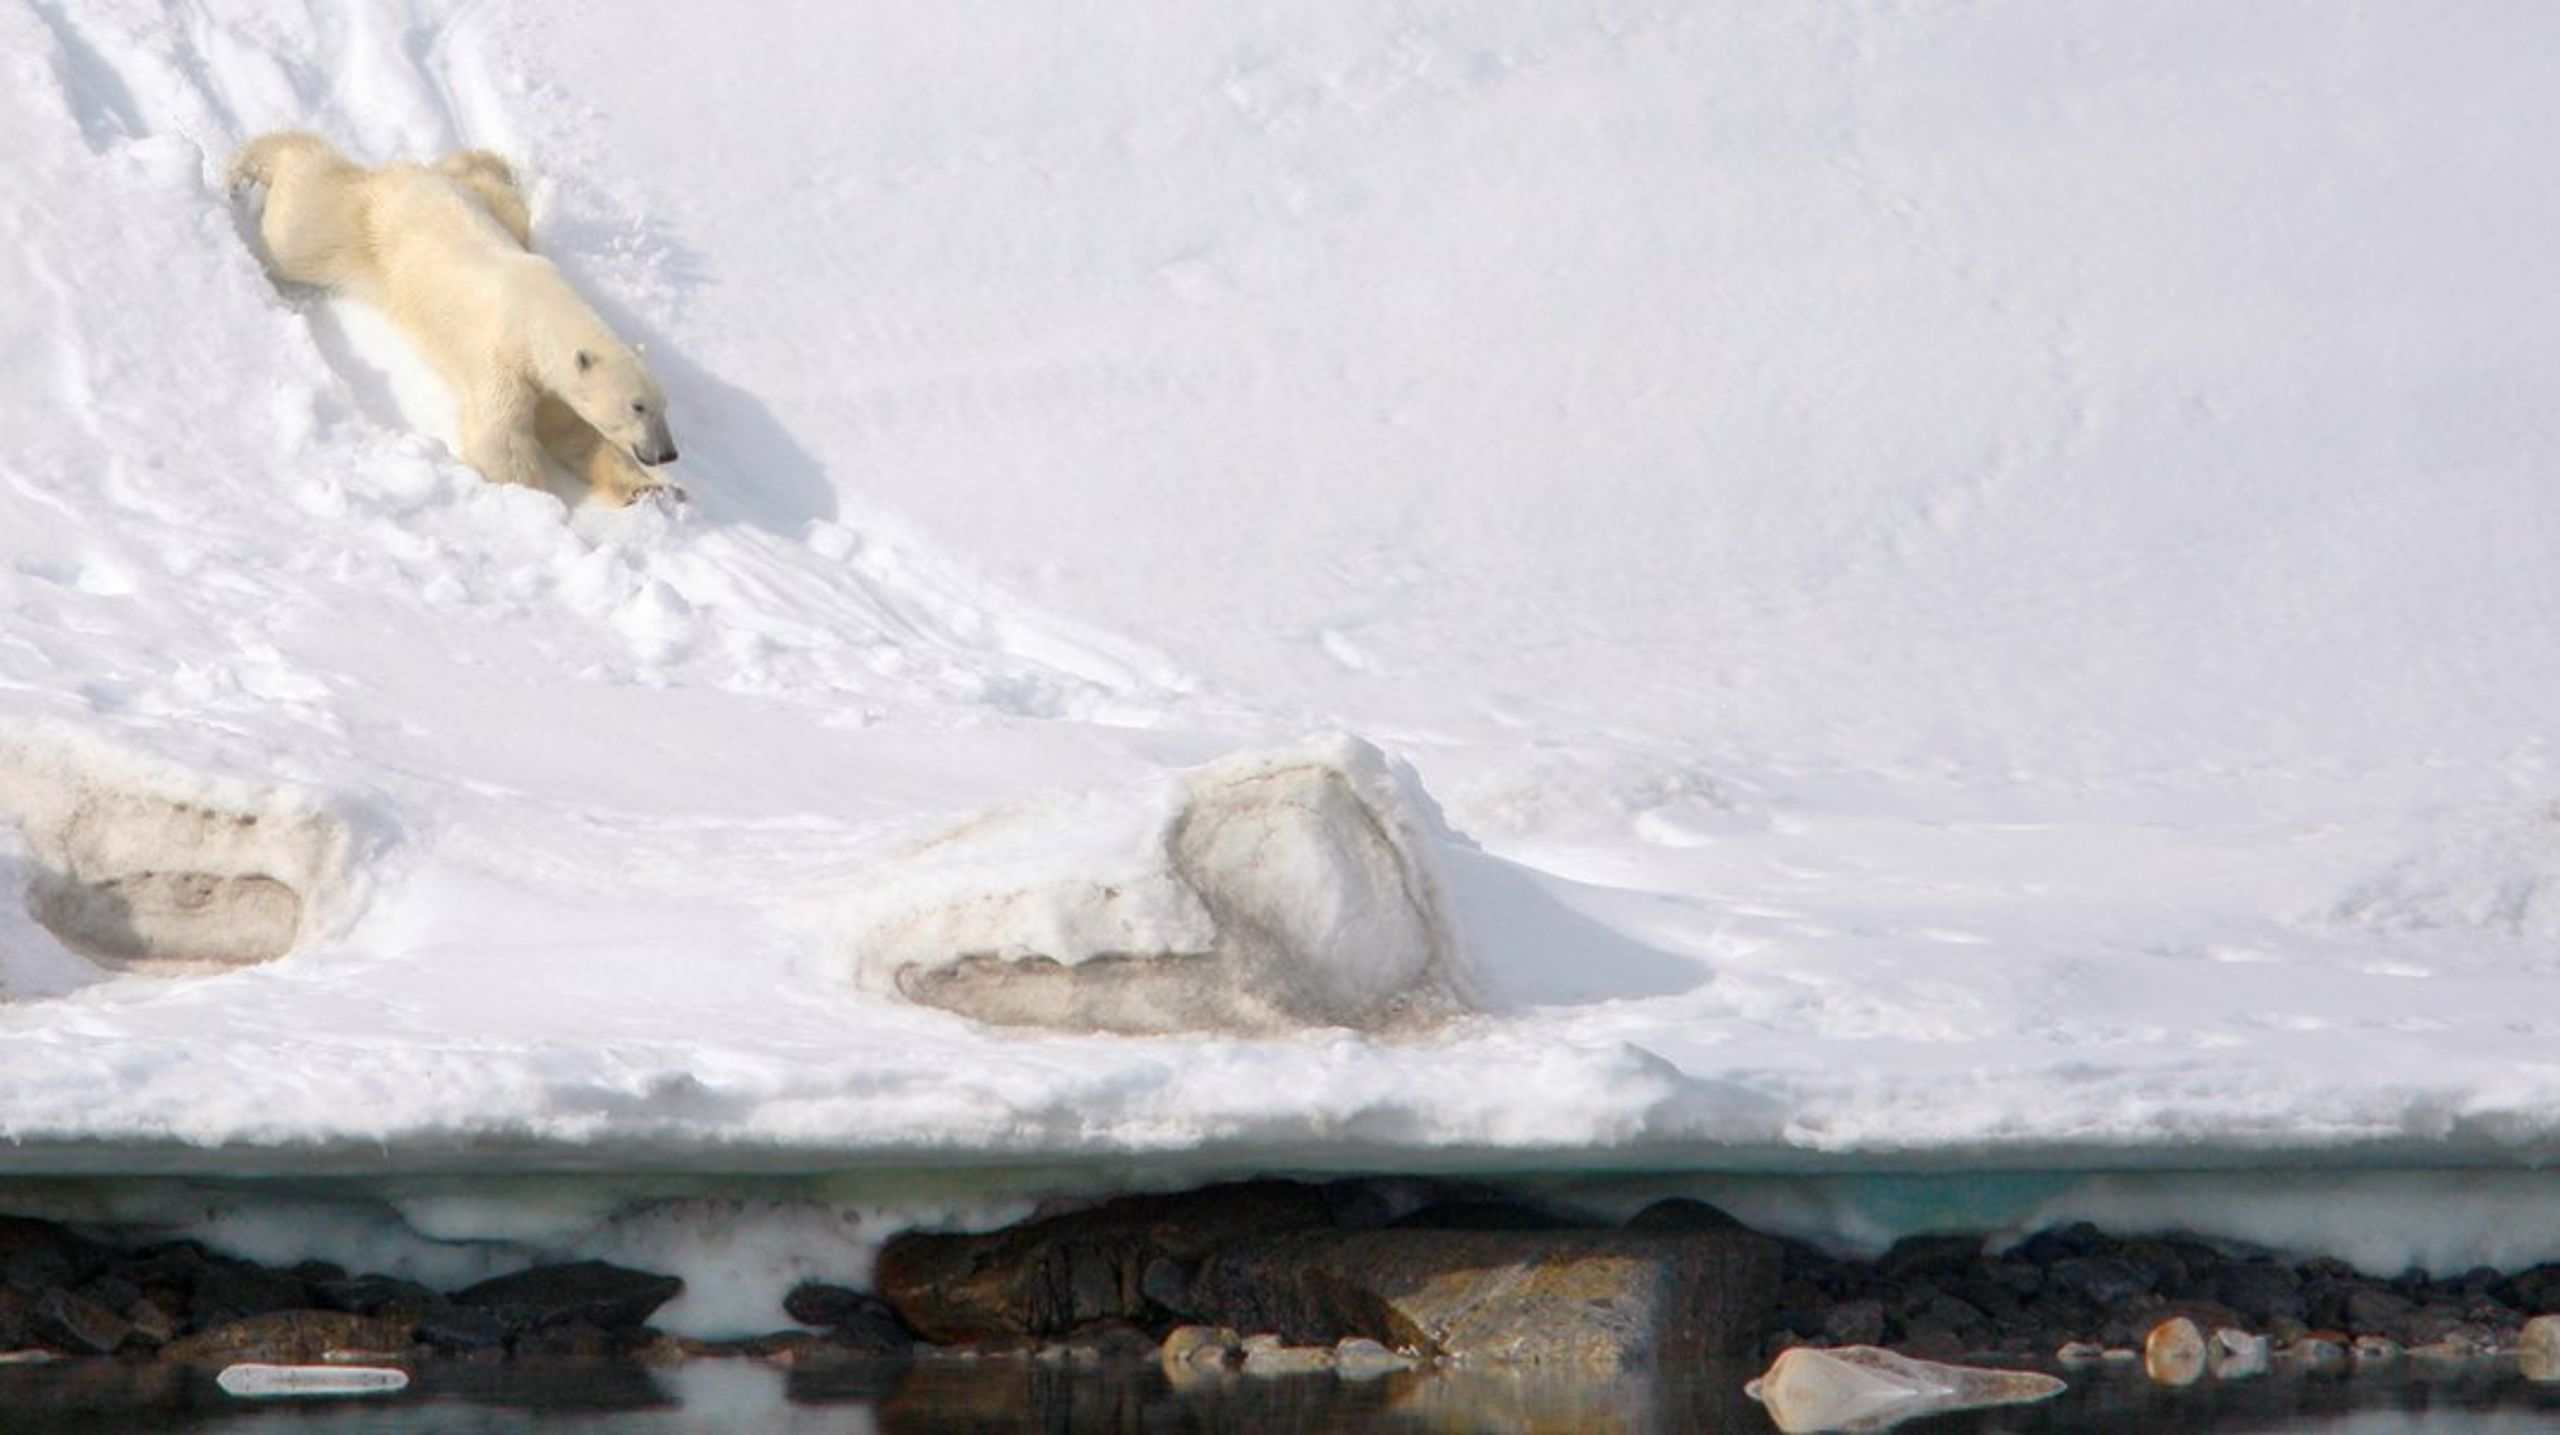 Departementet har forståelse for at turister ønsker å se isbjørn når de reiser til Svalbard og at dette er noe reiselivet tjener penger på, men det er departementets klare oppfatning at hensynet til isbjørn og å unngå forstyrrelse og habituering er viktigere, står det i det nye lovforslaget regjeringen nå legger frem for Stortinget.&nbsp;